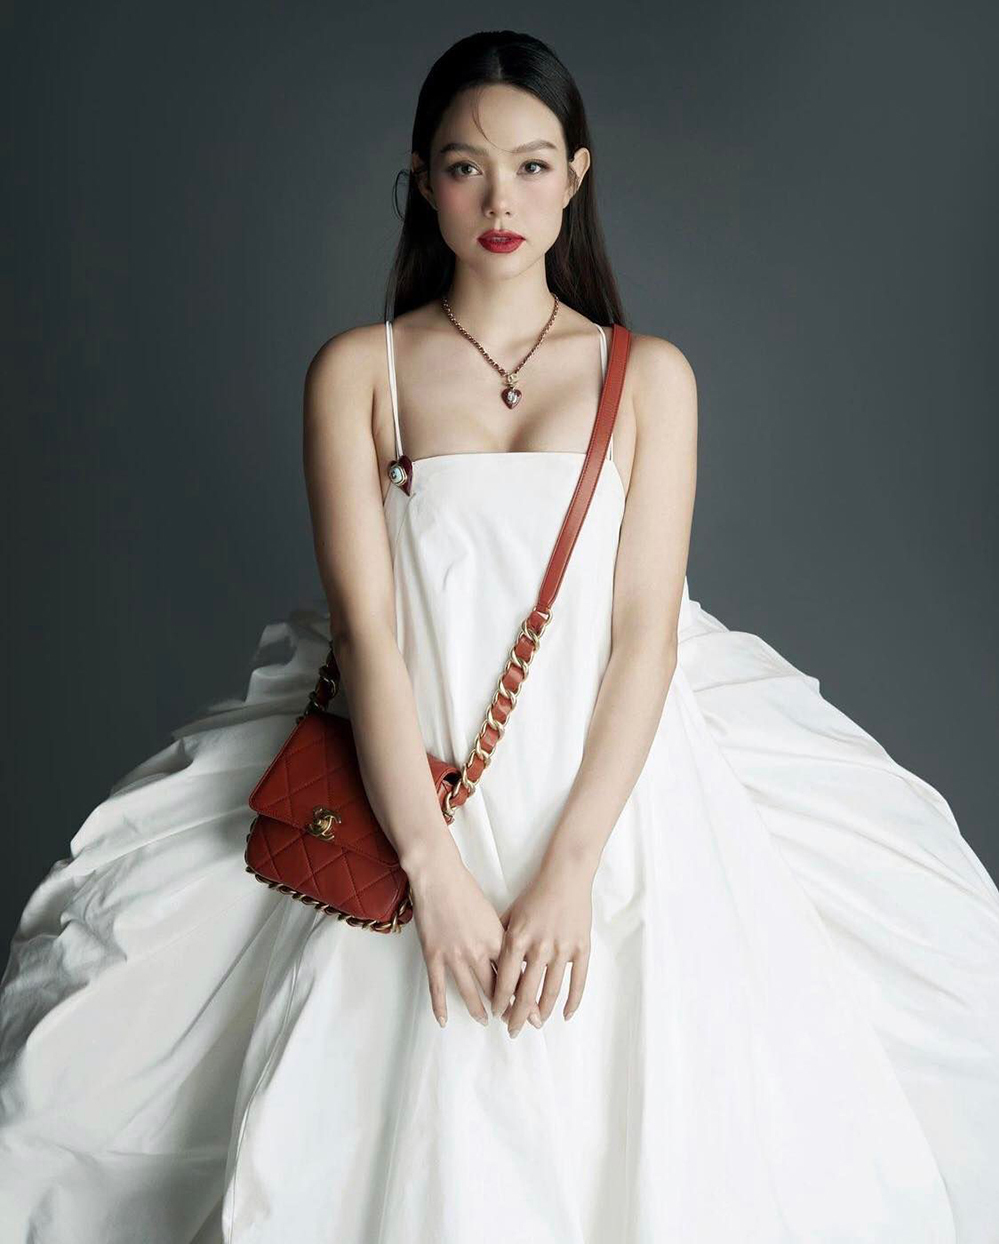 Váy cưới gần 400 triệu đồng của Minh Hằng được sao Hollywood ưa chuộng